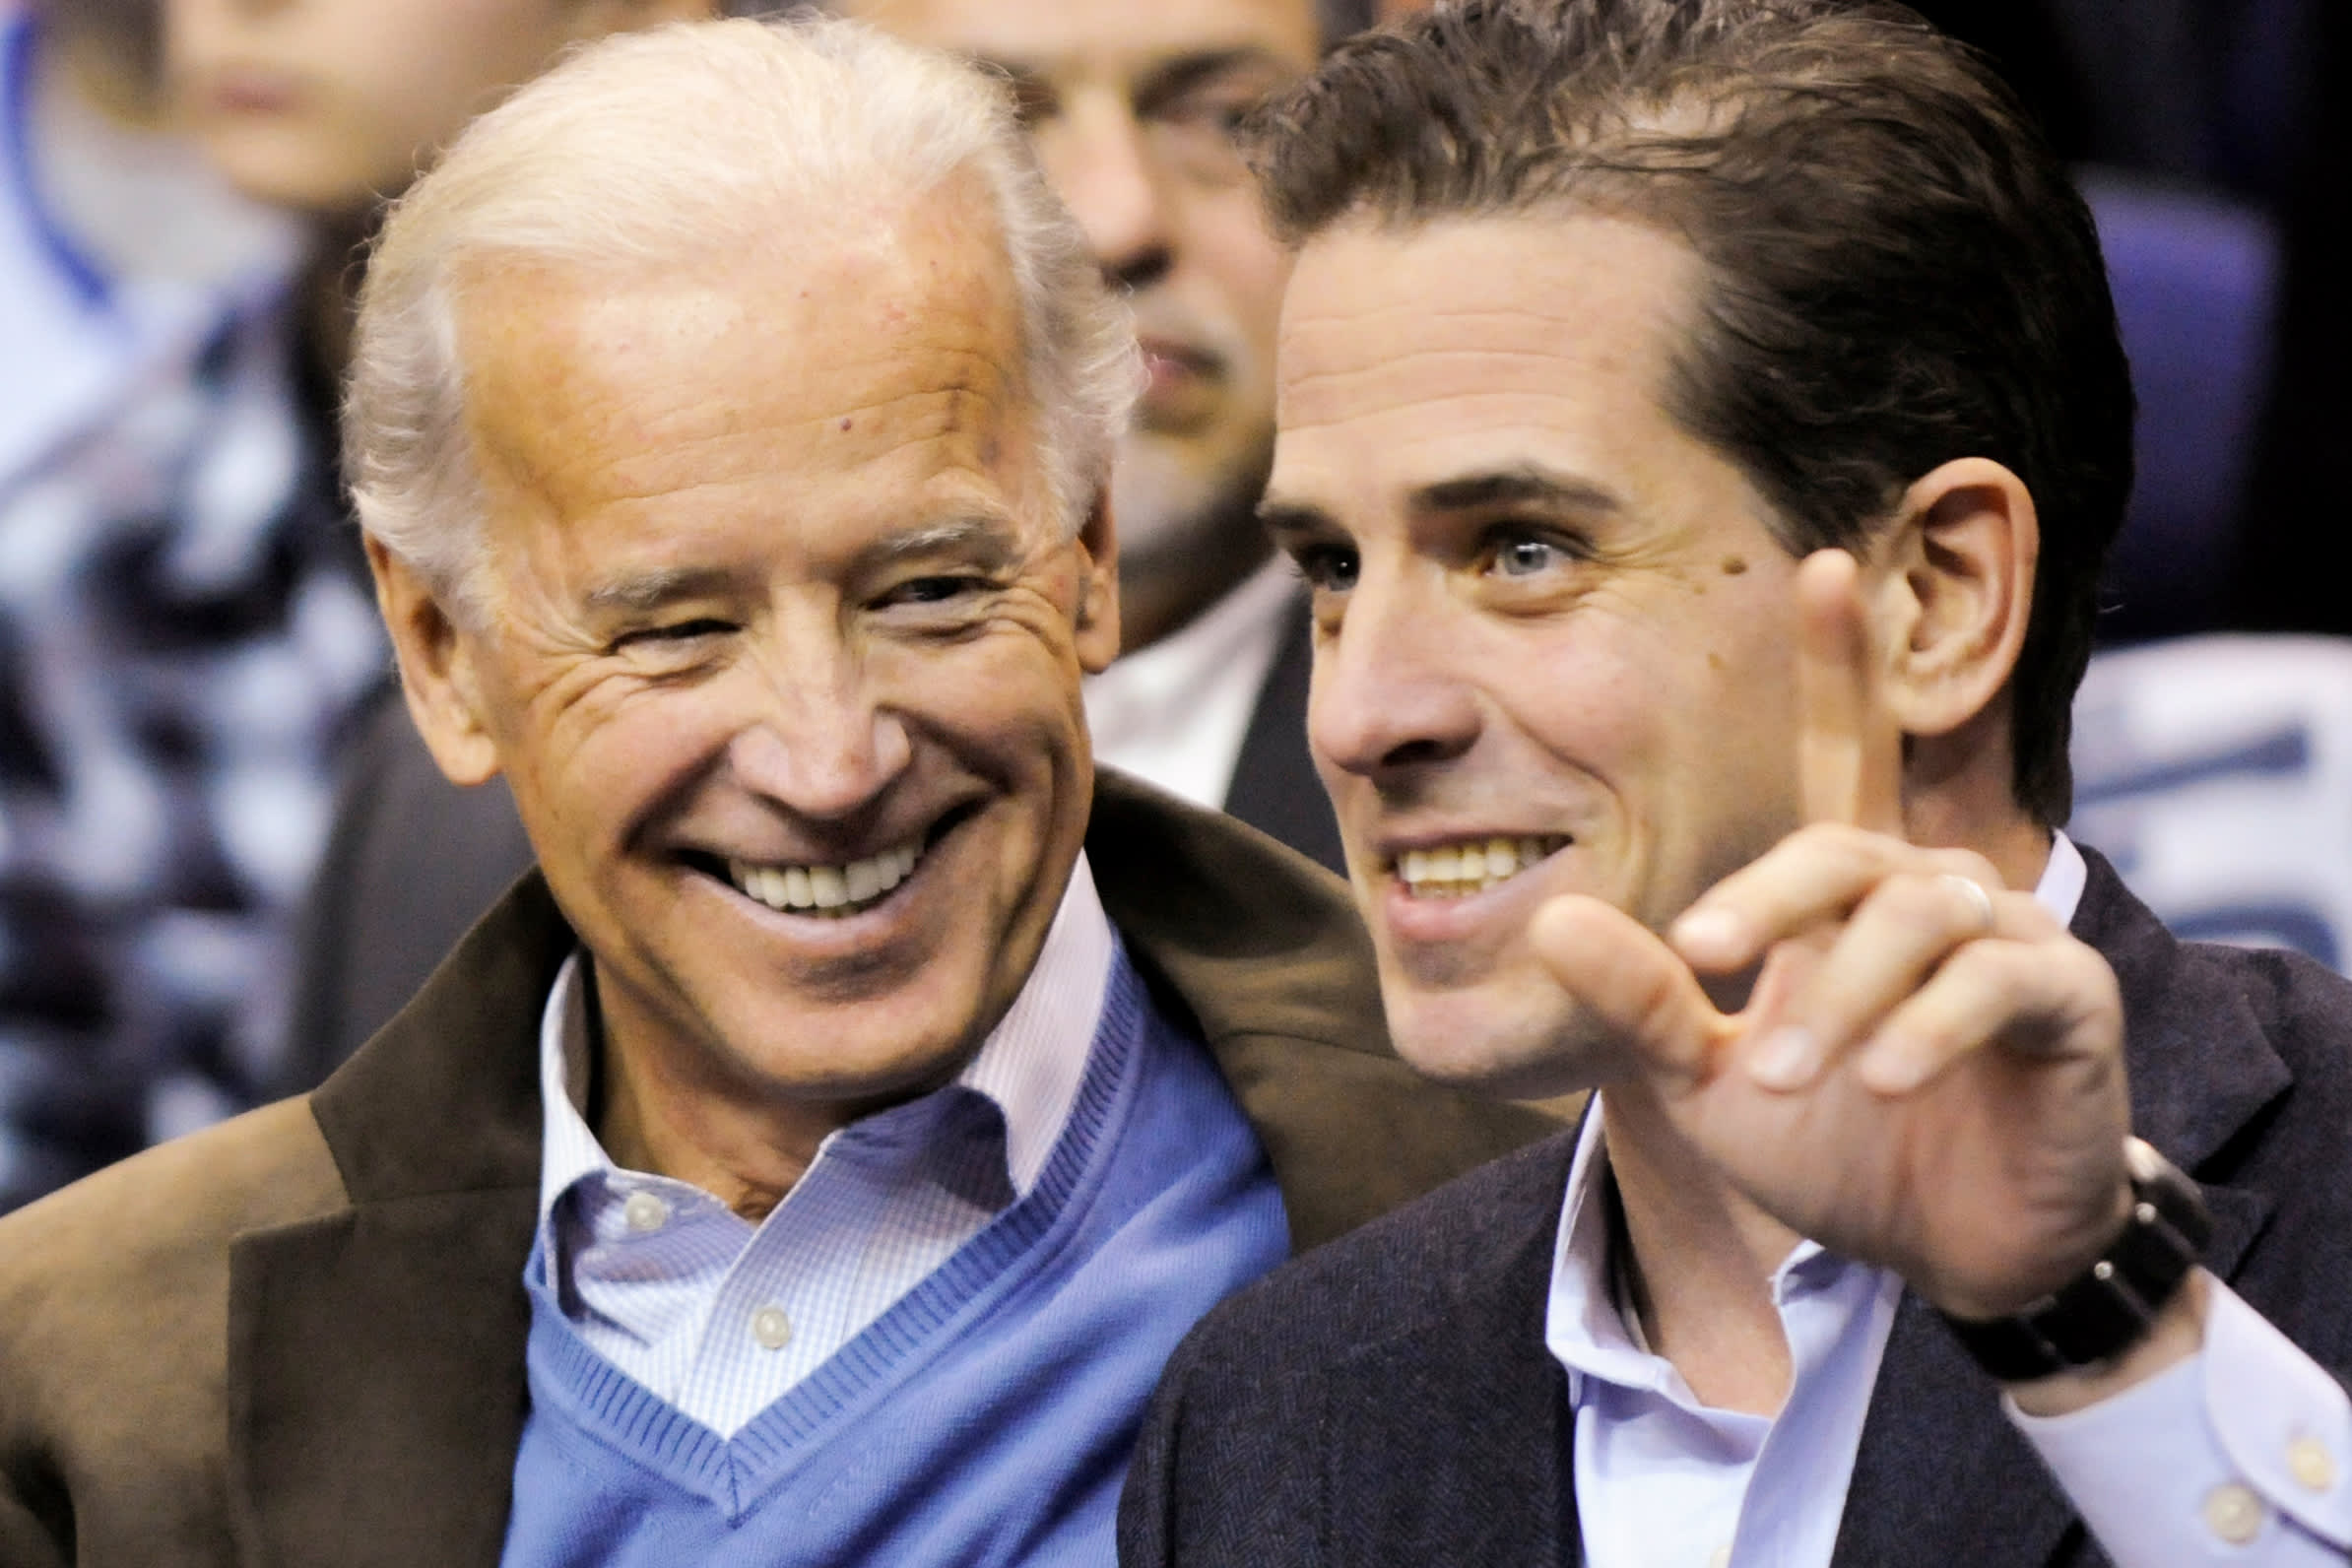 Joe Biden son Hunter Biden under federal tax investigation